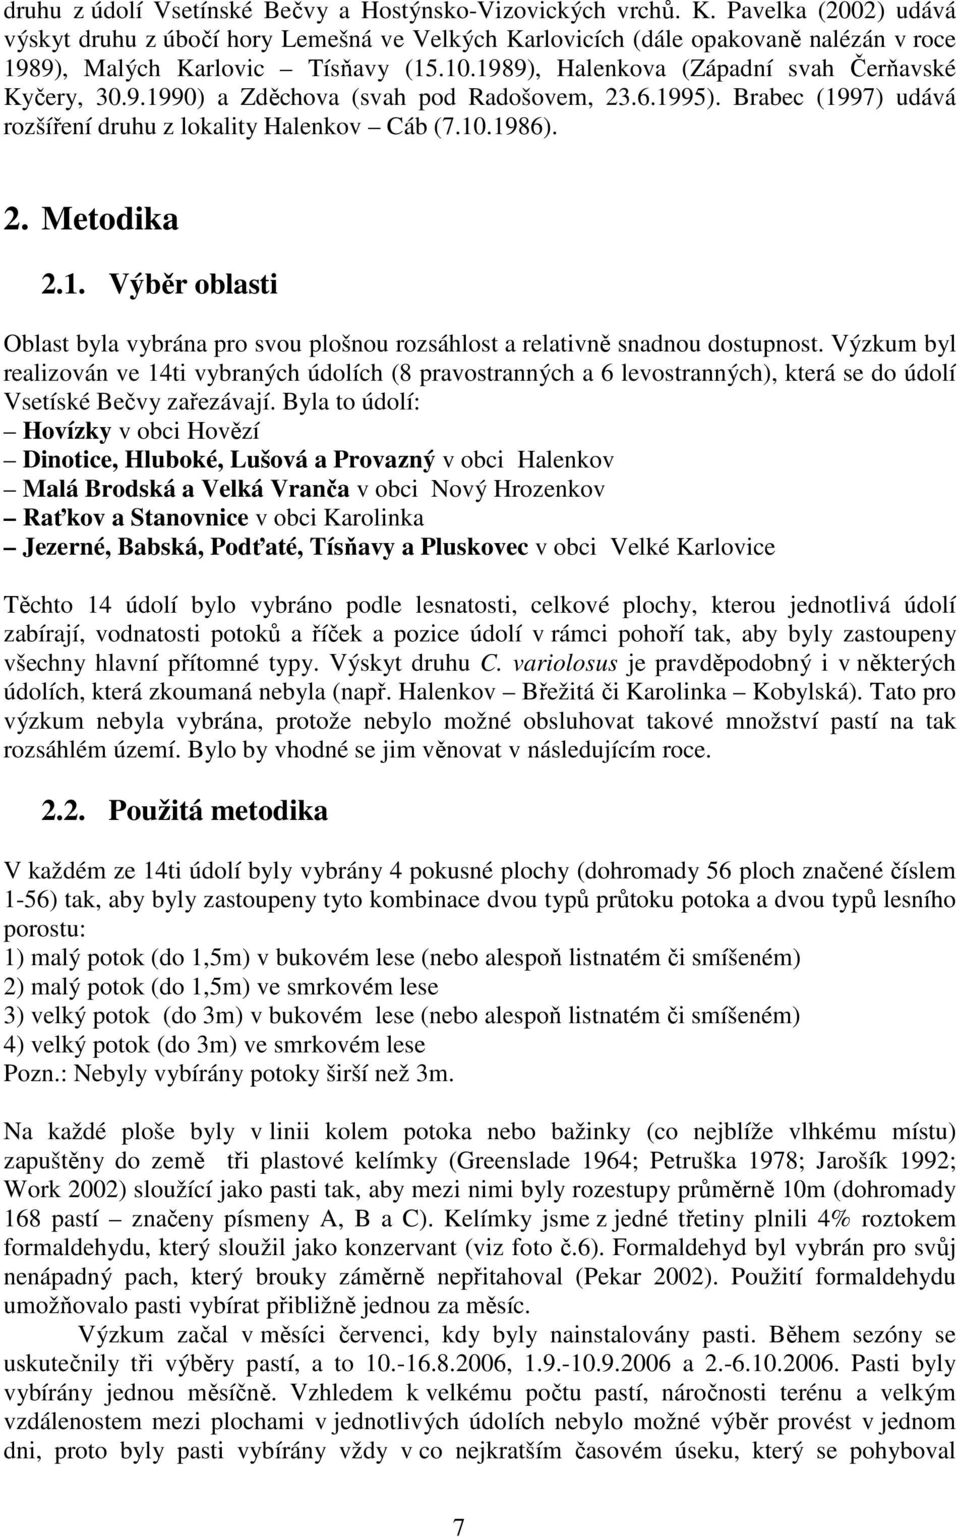 9.1990) a Zděchova (svah pod Radošovem, 23.6.1995). Brabec (1997) udává rozšíření druhu z lokality Halenkov Cáb (7.10.1986). 2. Metodika 2.1. Výběr oblasti Oblast byla vybrána pro svou plošnou rozsáhlost a relativně snadnou dostupnost.